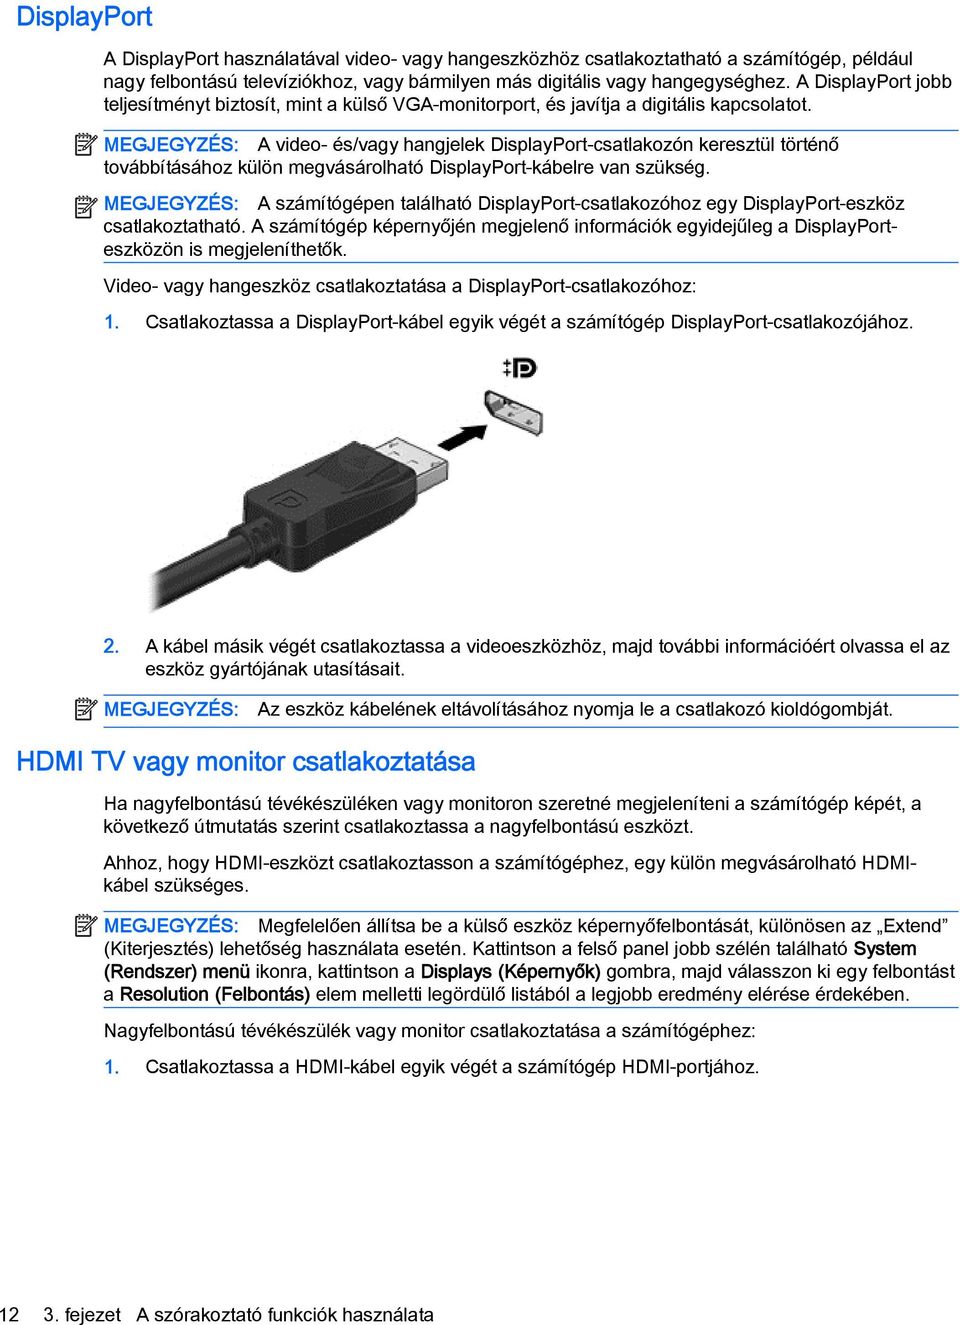 MEGJEGYZÉS: A video- és/vagy hangjelek DisplayPort-csatlakozón keresztül történő továbbításához külön megvásárolható DisplayPort-kábelre van szükség.